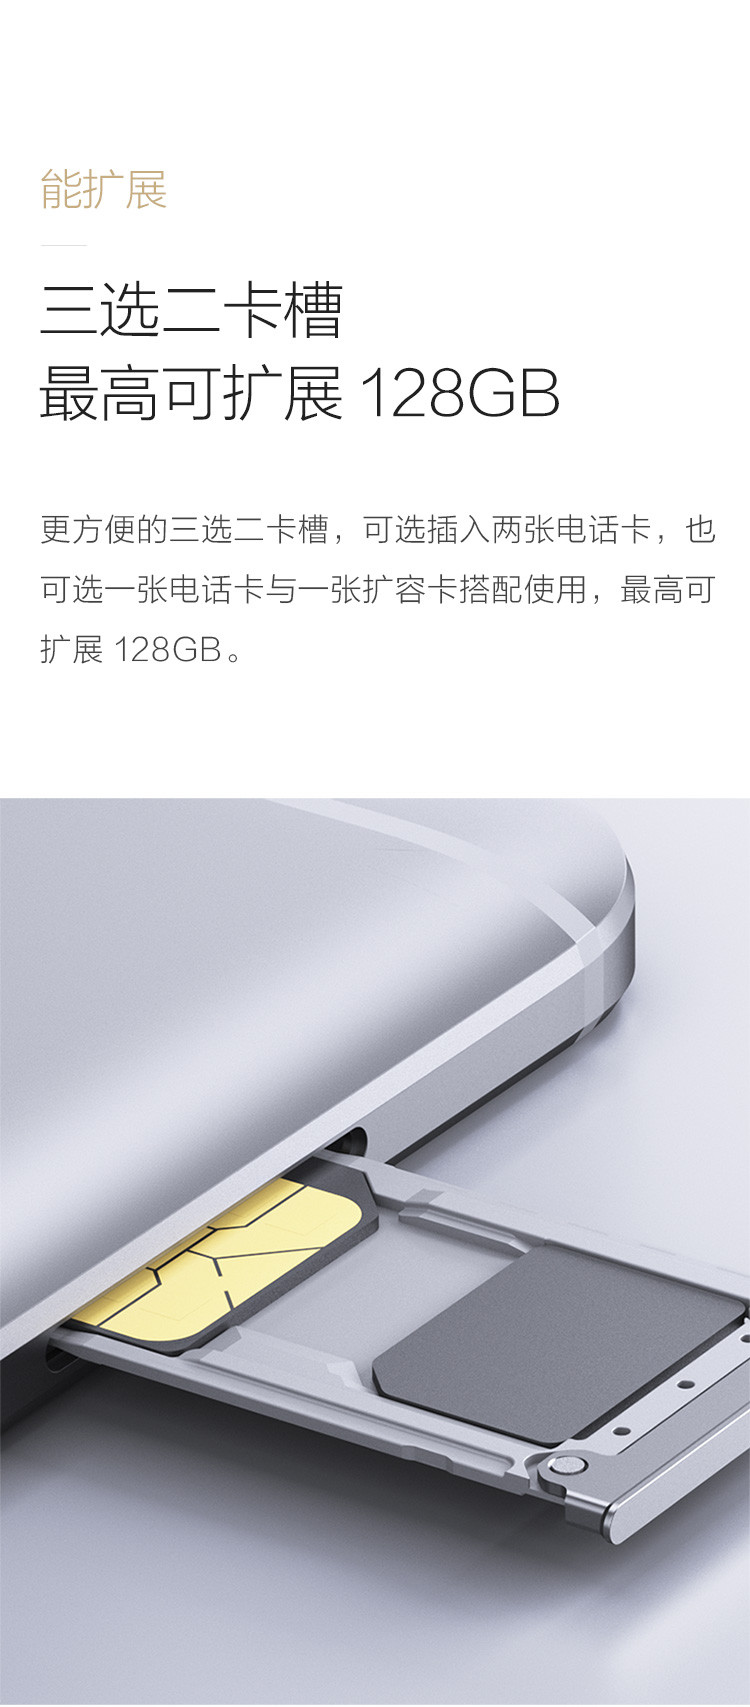 小米(MI) 红米Note4 4G手机 双卡双待 银白 全网通高配版(3G RAM+64G ROM)